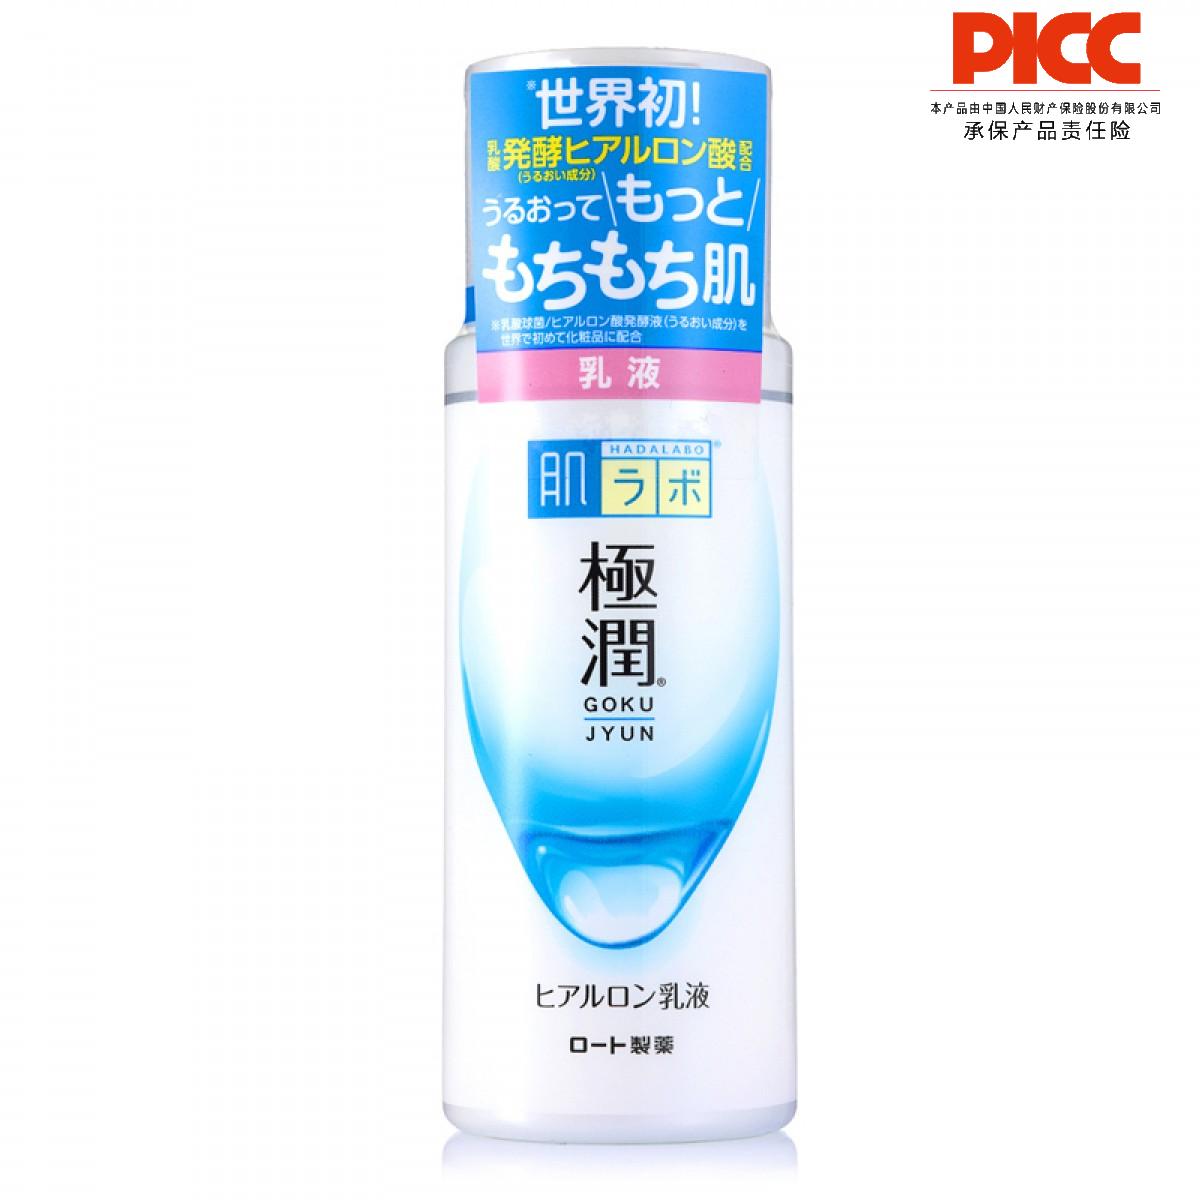 【保稅】日本樂敦(ROHTO)肌研極潤保濕乳液140ml